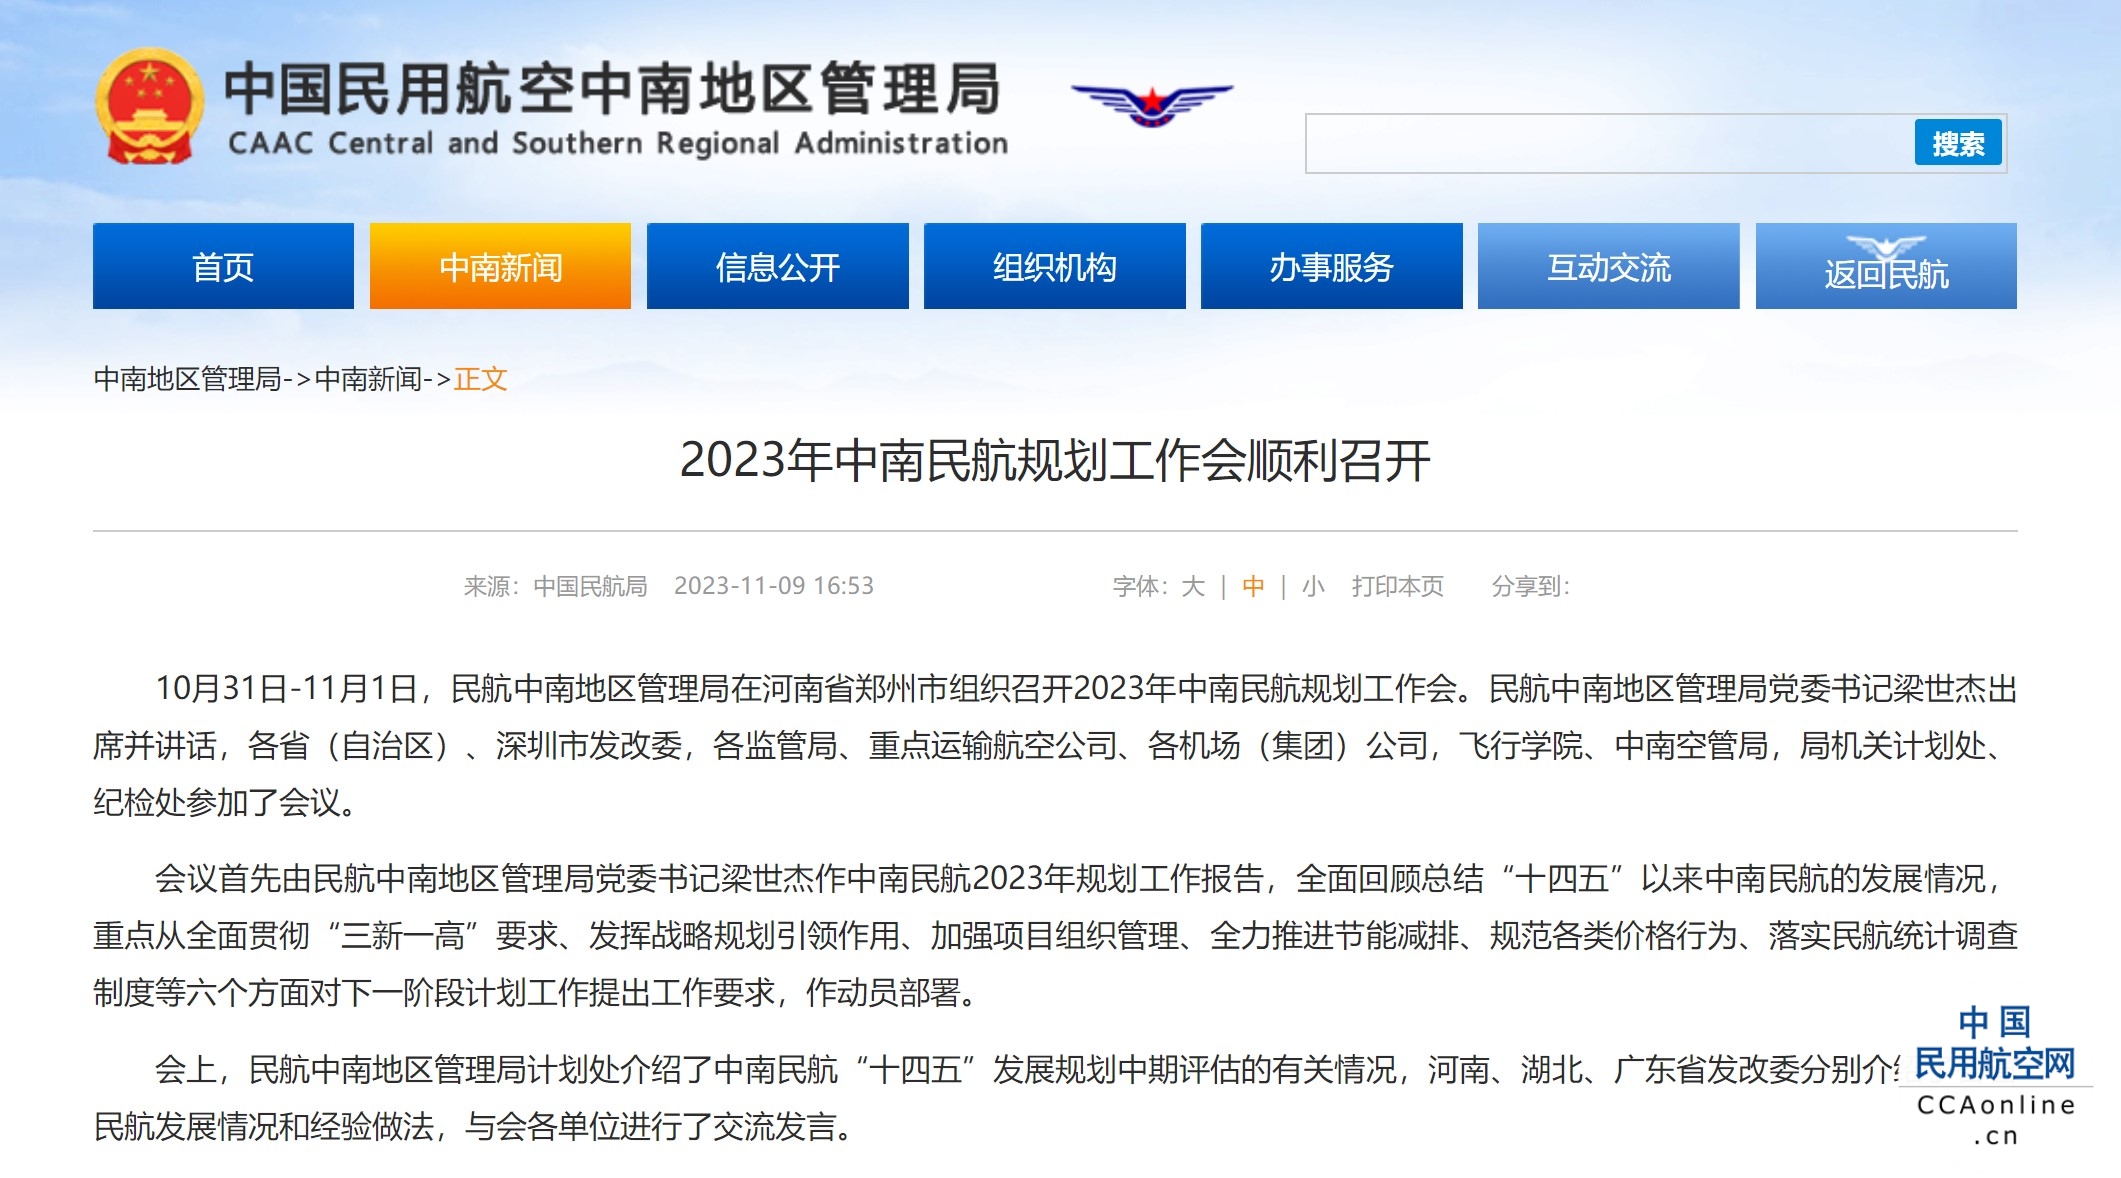 2023年中南民航规划工作会顺利召开